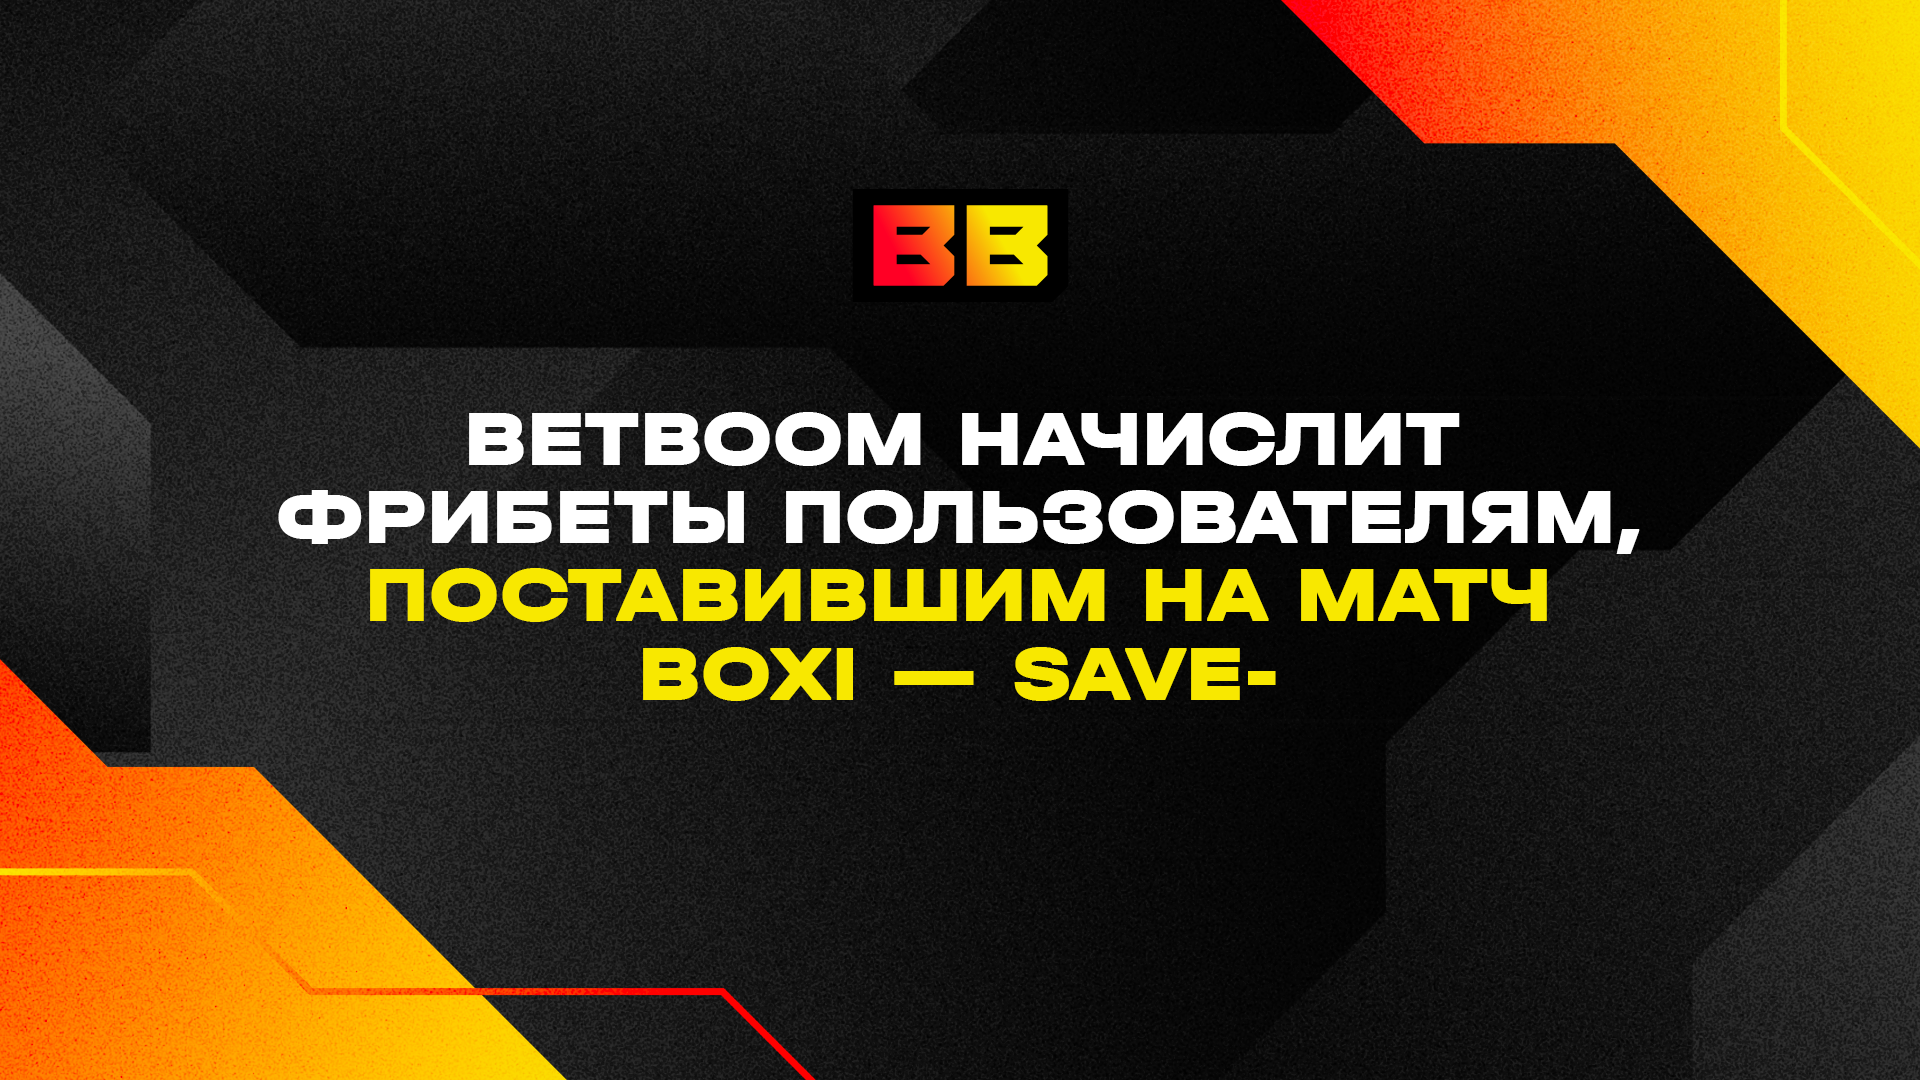 BetBoom начислит фрибеты пользователям поставившим на матч Boxi — Save-